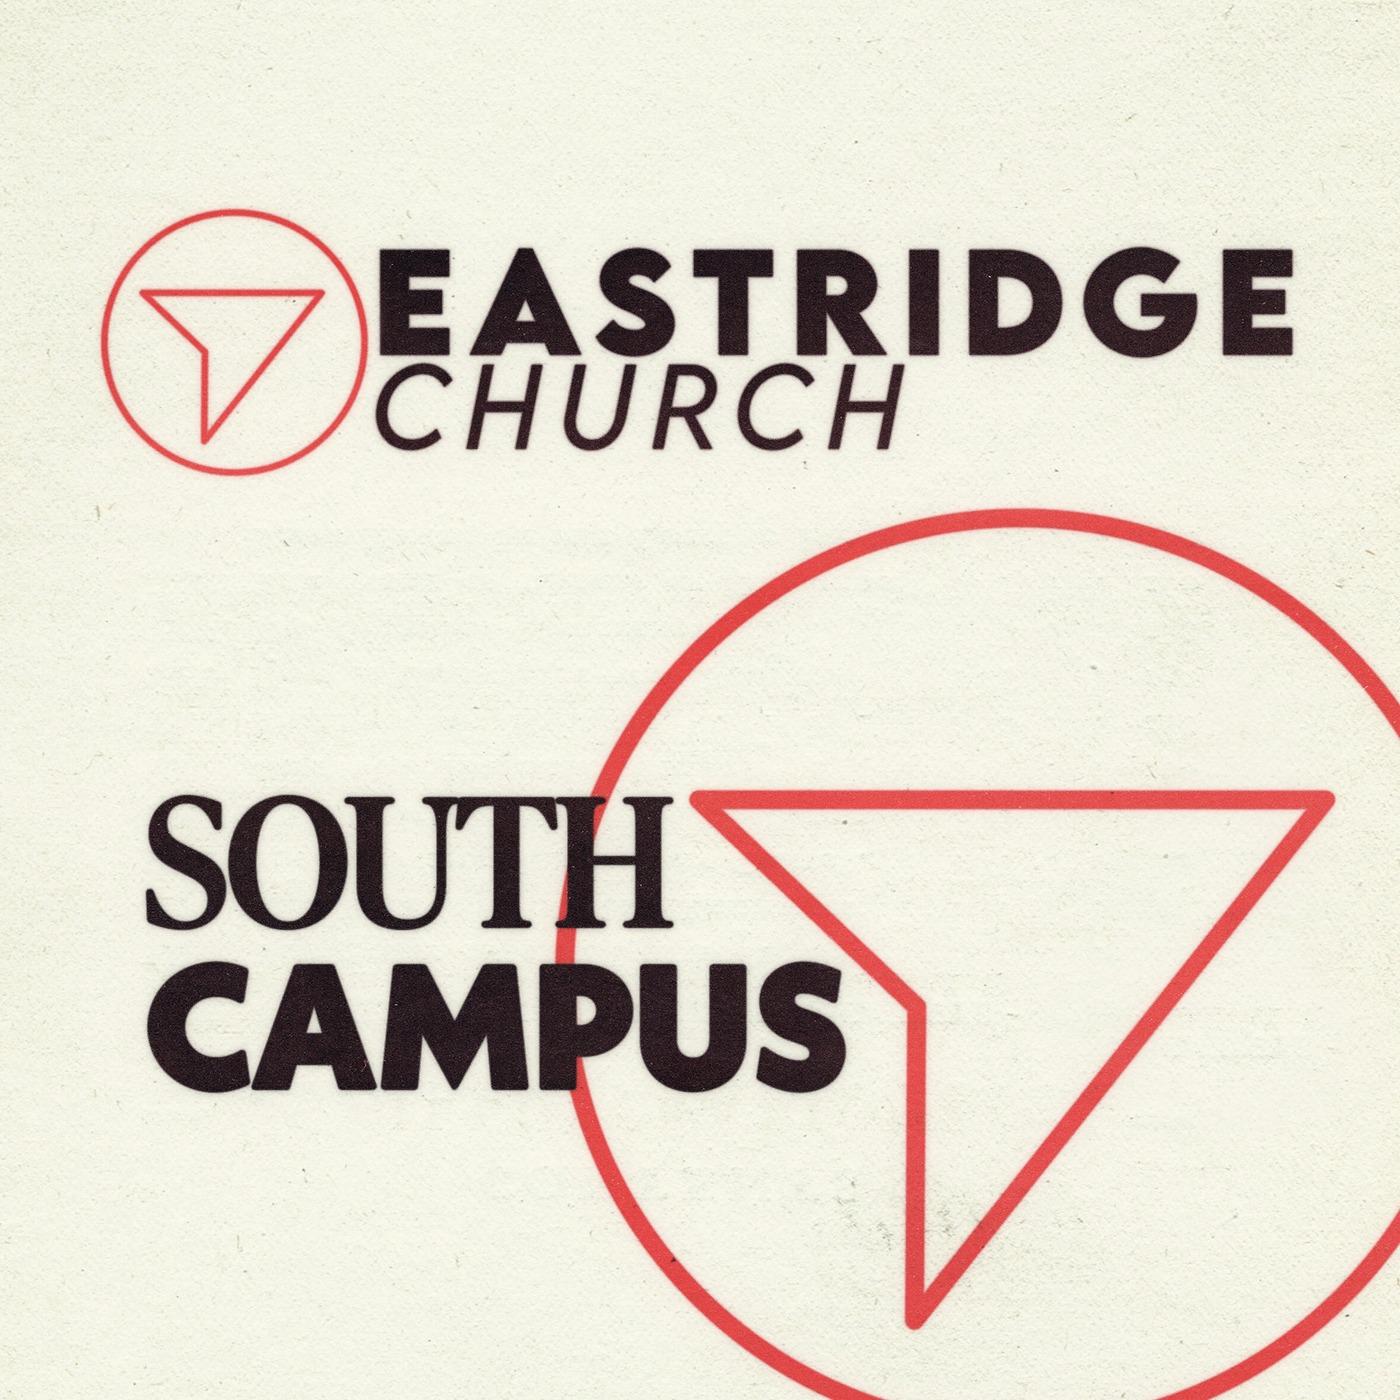 Eastridge Church South Campus